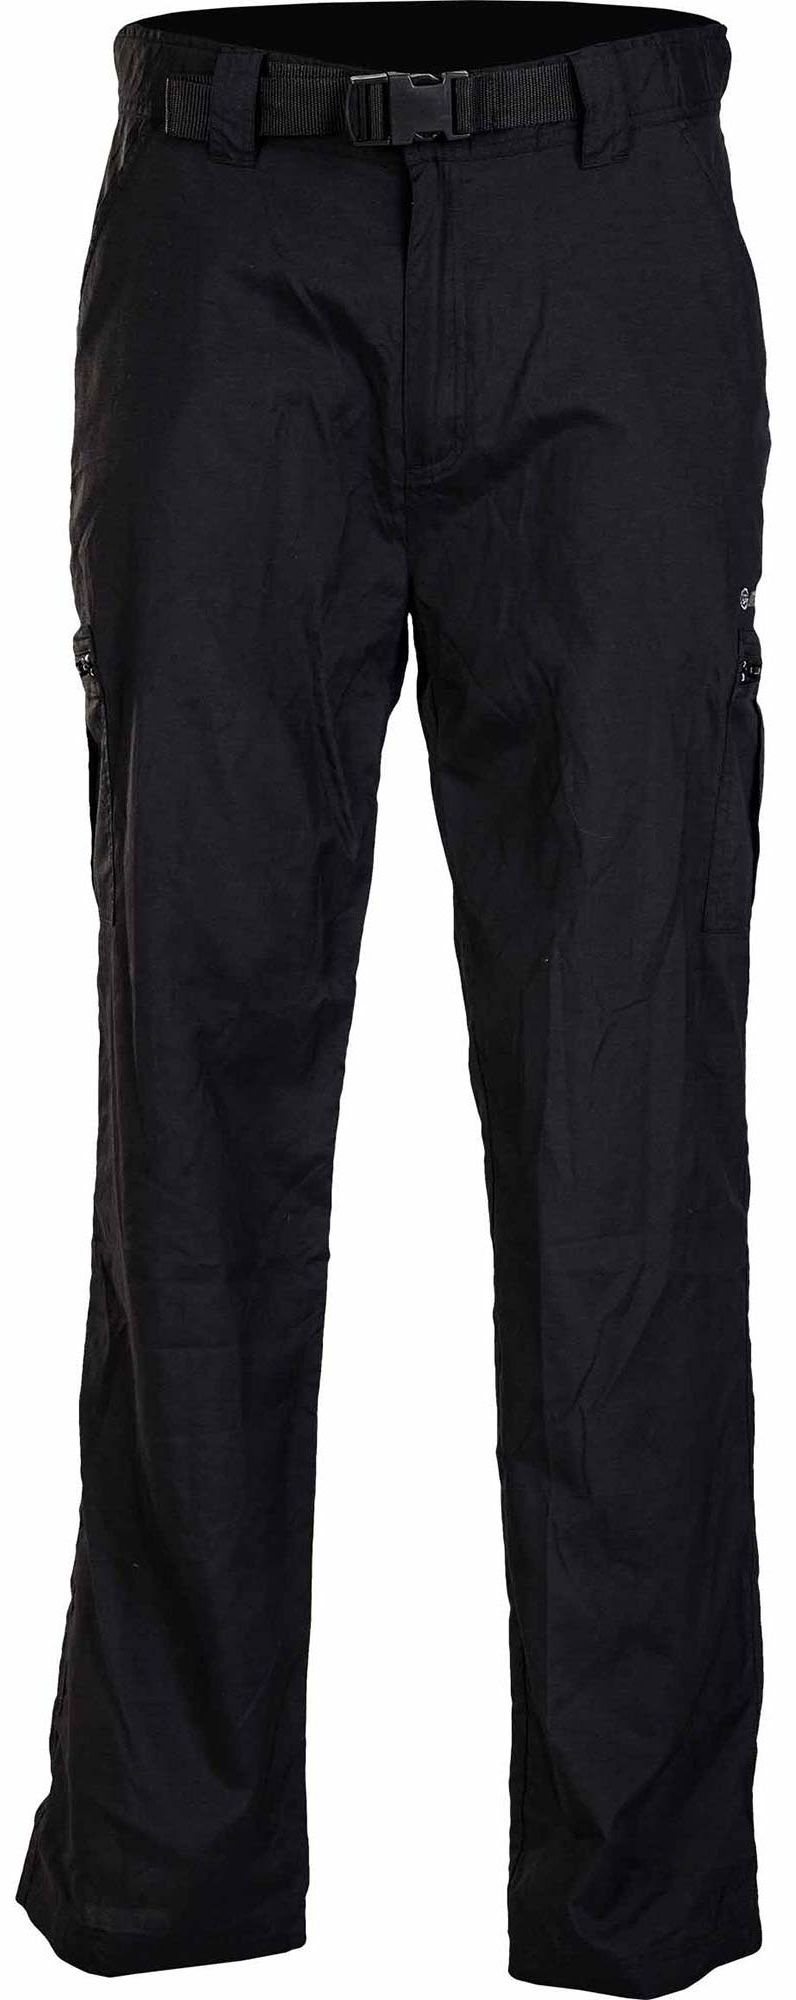 LOBAN OUTDOOR PANTS LIGHT - Pánské outdoorové kalhoty